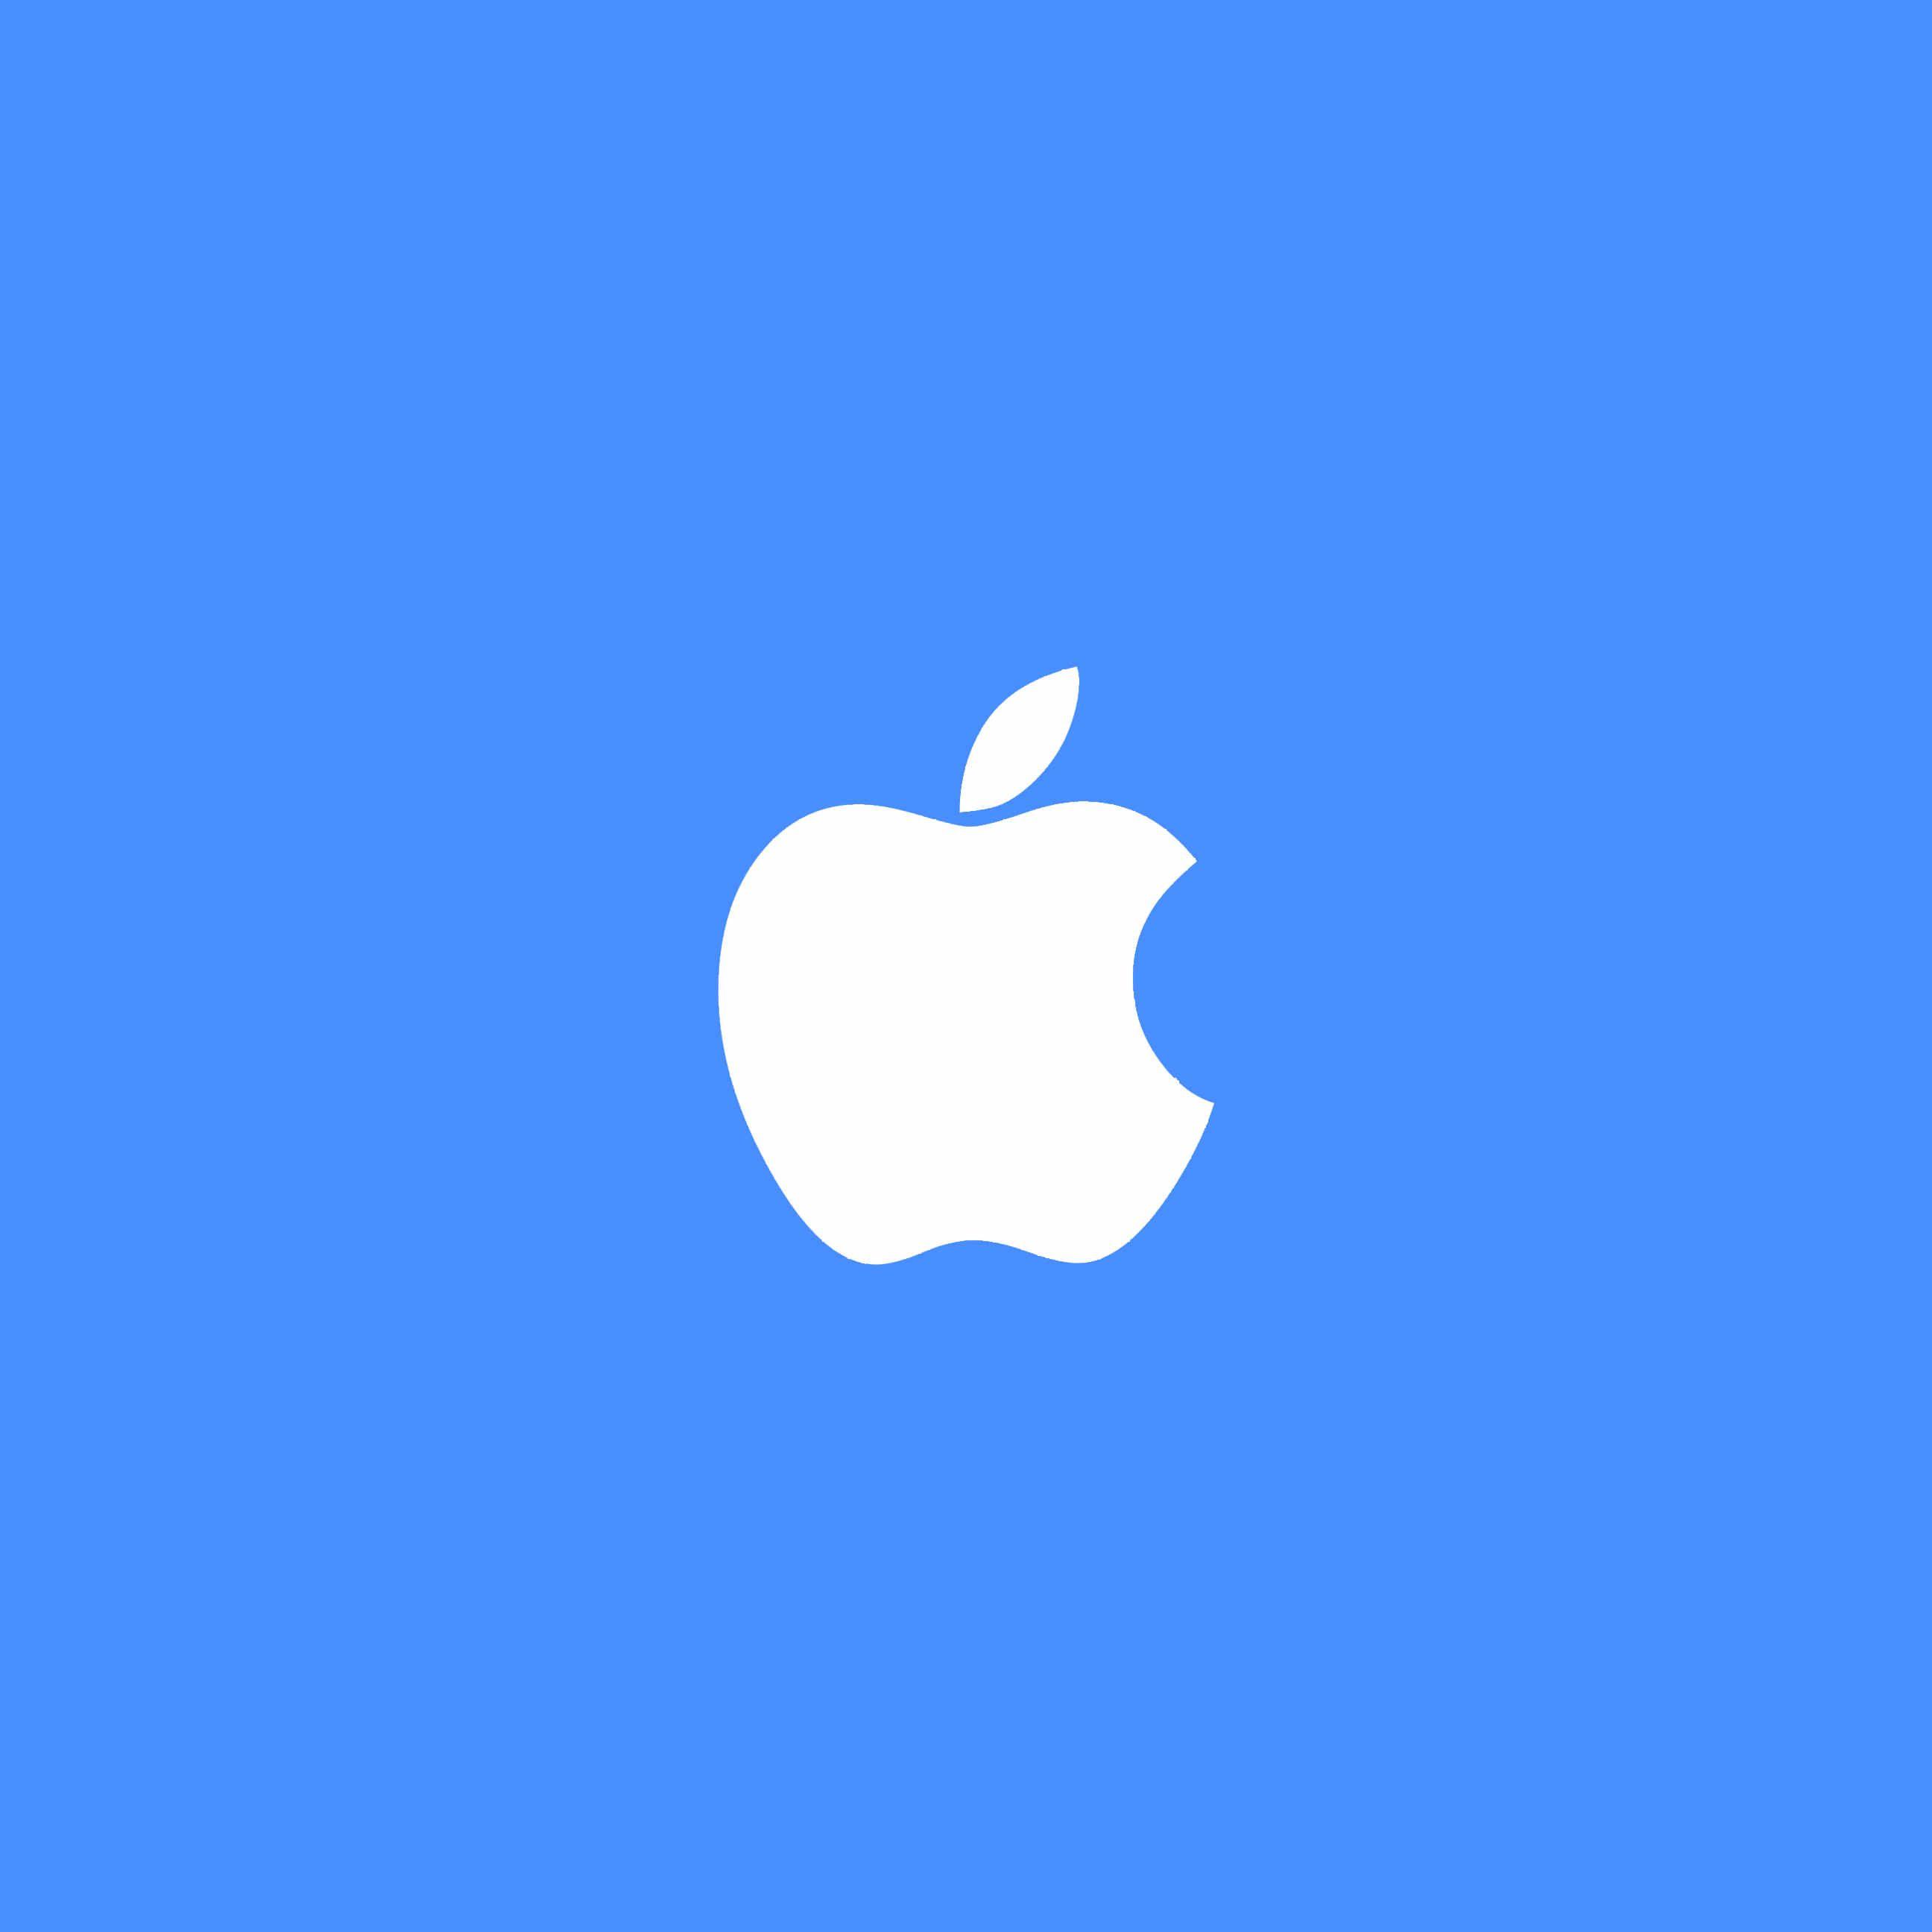 Blue Apple Logo - The blue-white Apple logo | wallpaper.sc iPhone6sPlus